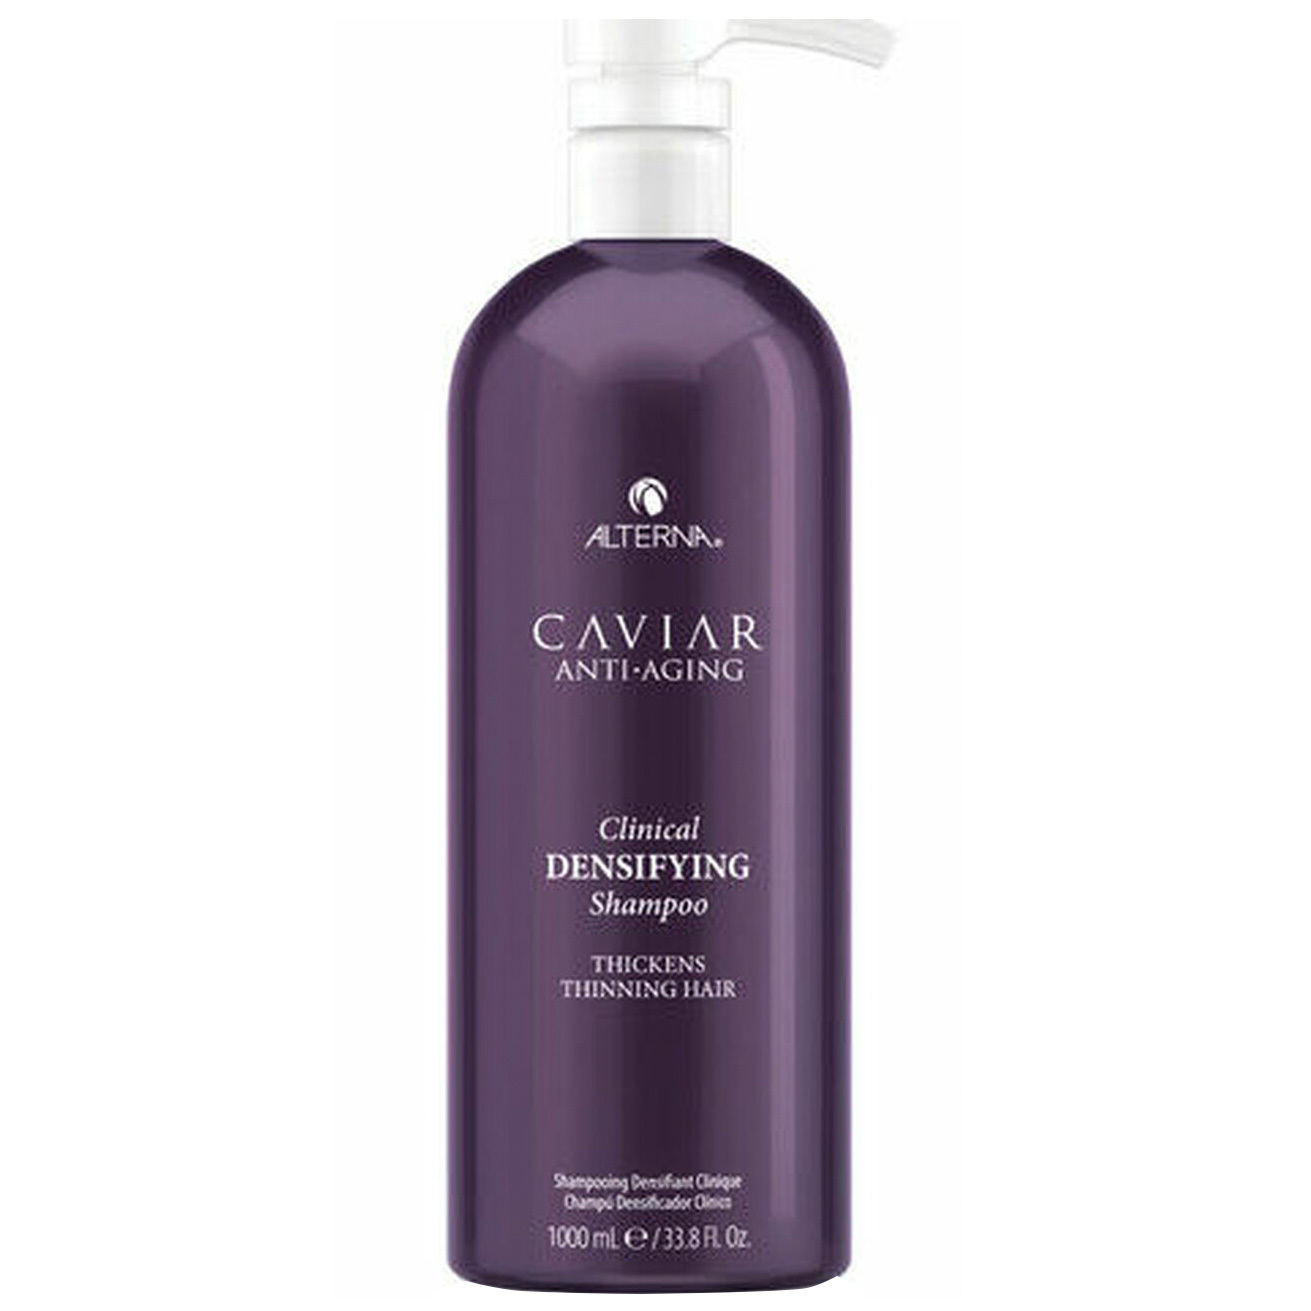 Alterna Caviar Anti-Aging Densifying Clinical Shampoo 33.8oz